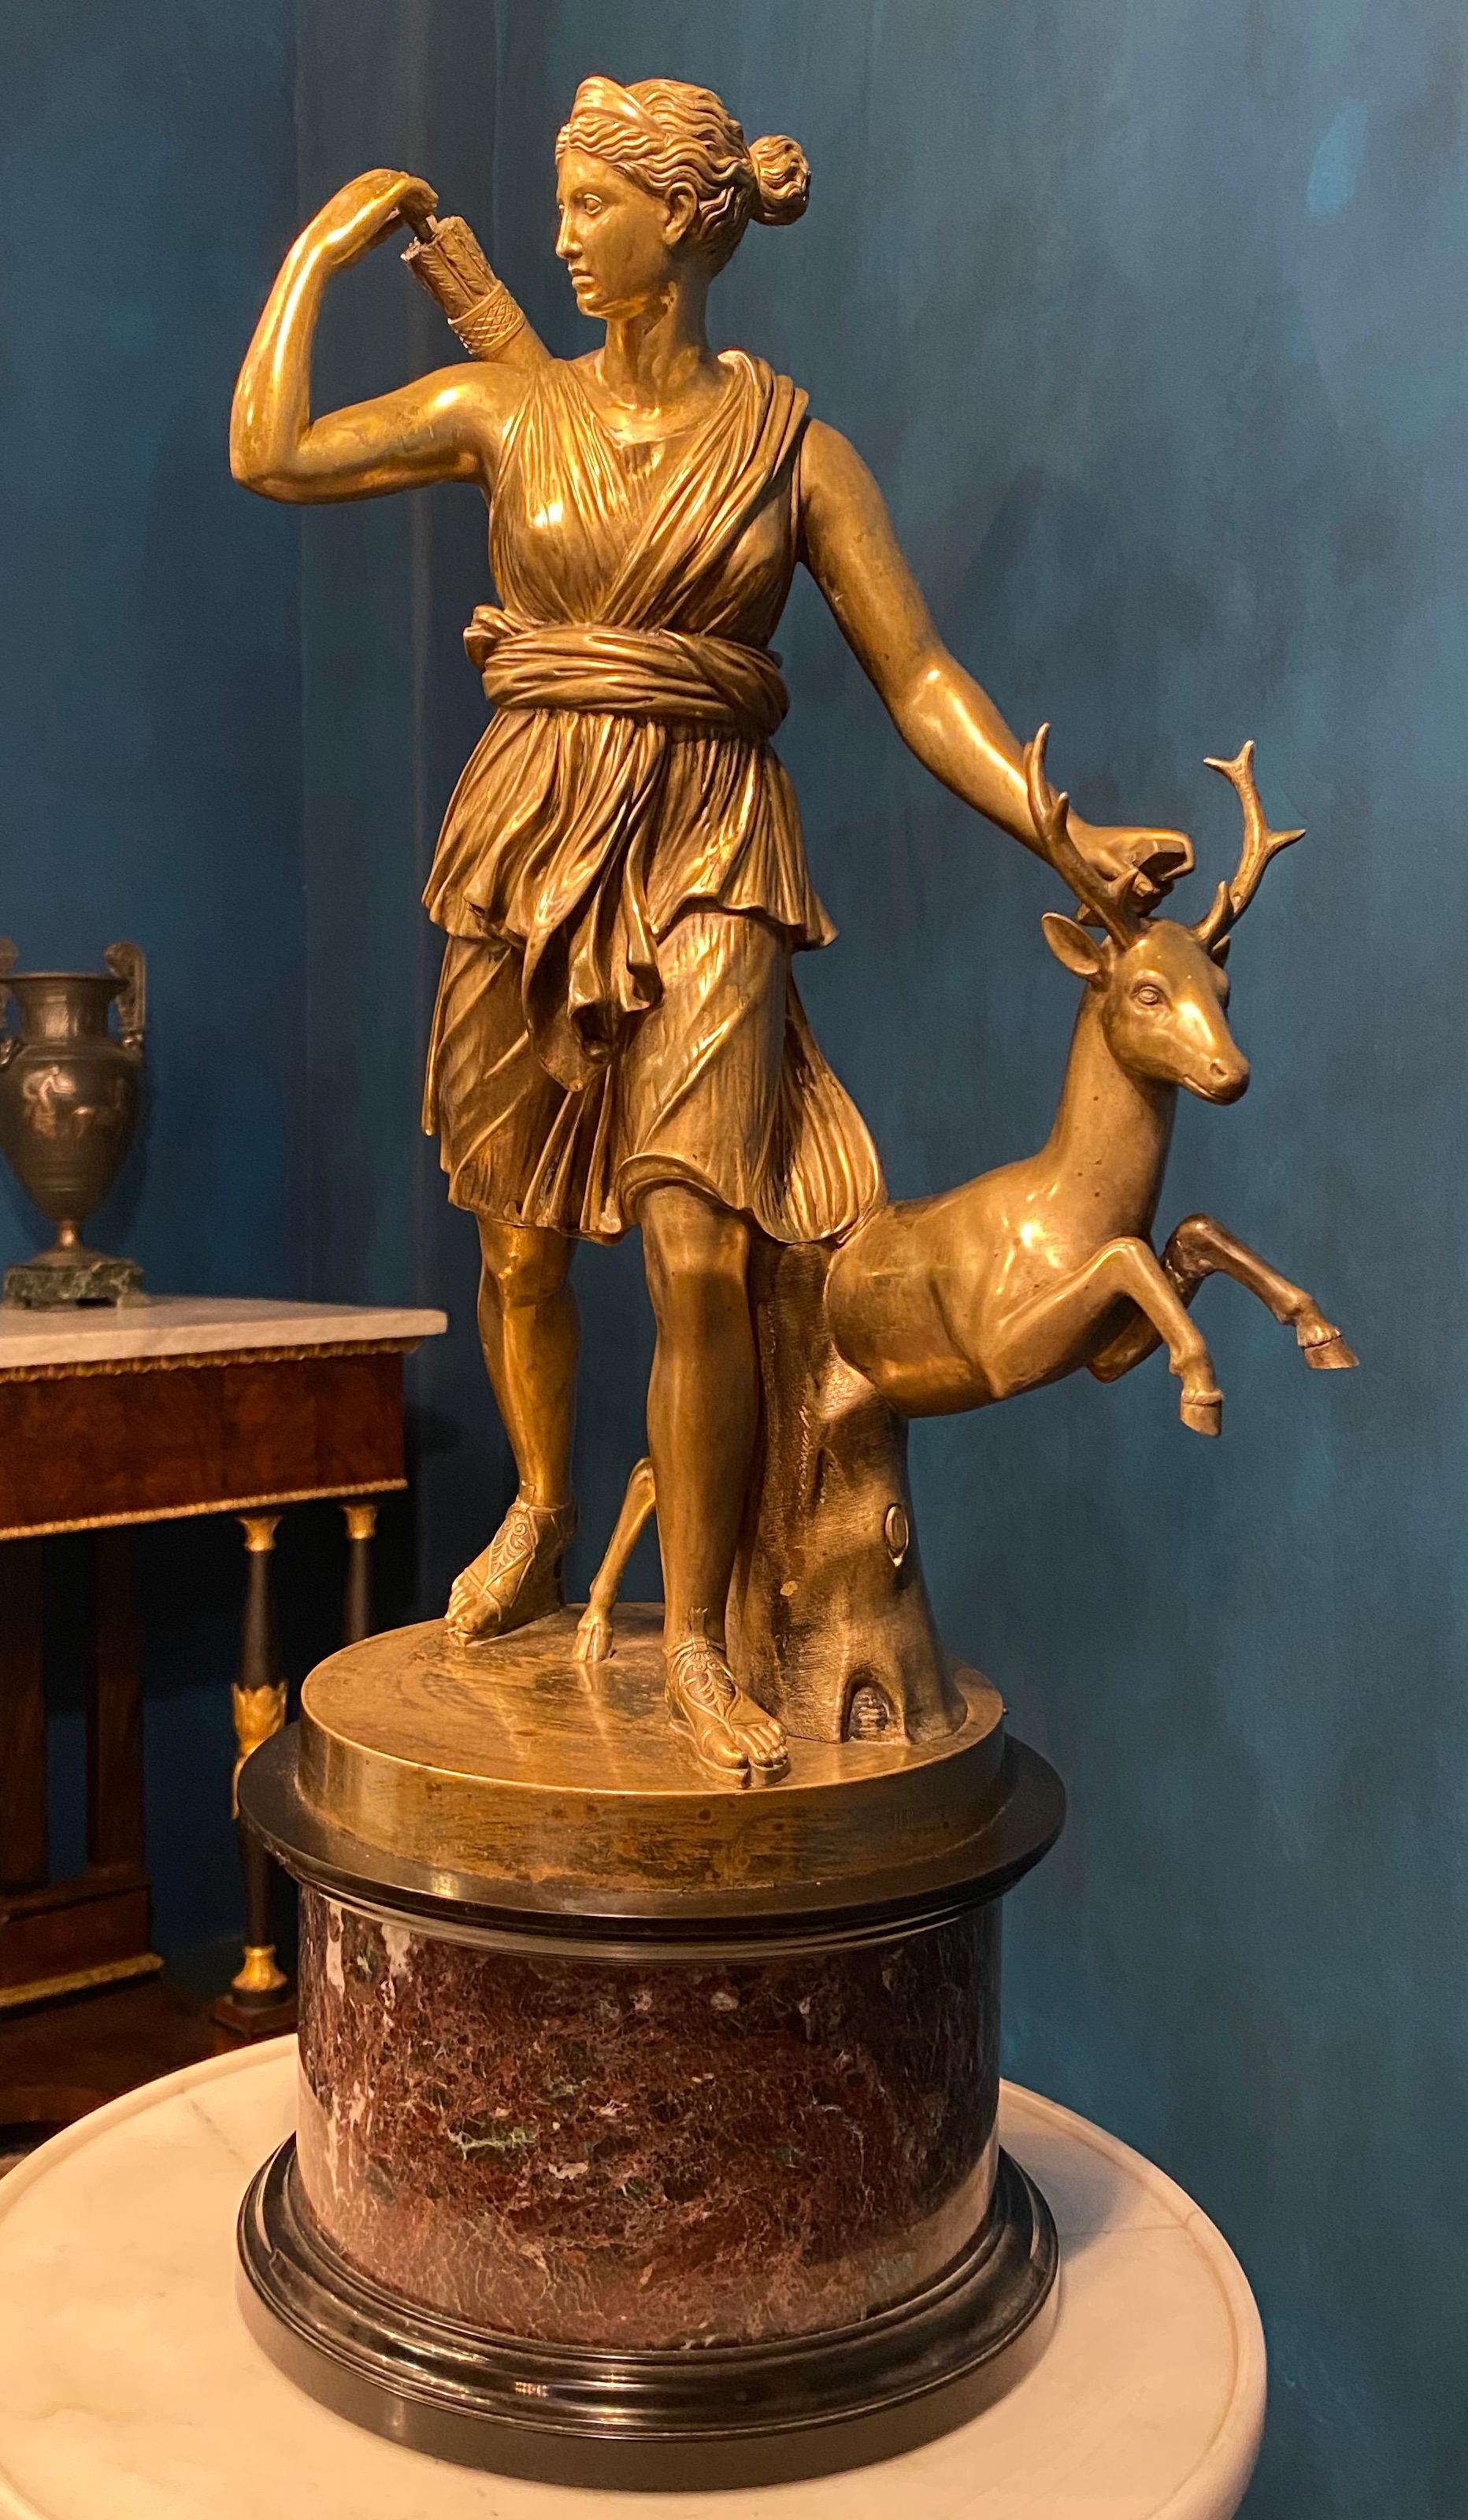 Grand Tour Groupe de sculptures en bronze d'après un Louvre  Diane de Versailles ou Artemis, déesse de la chasse.
Diane est représentée à la chasse, se hâtant vers l'avant, comme à la poursuite d'un gibier. Elle regarde vers la droite et, le bras